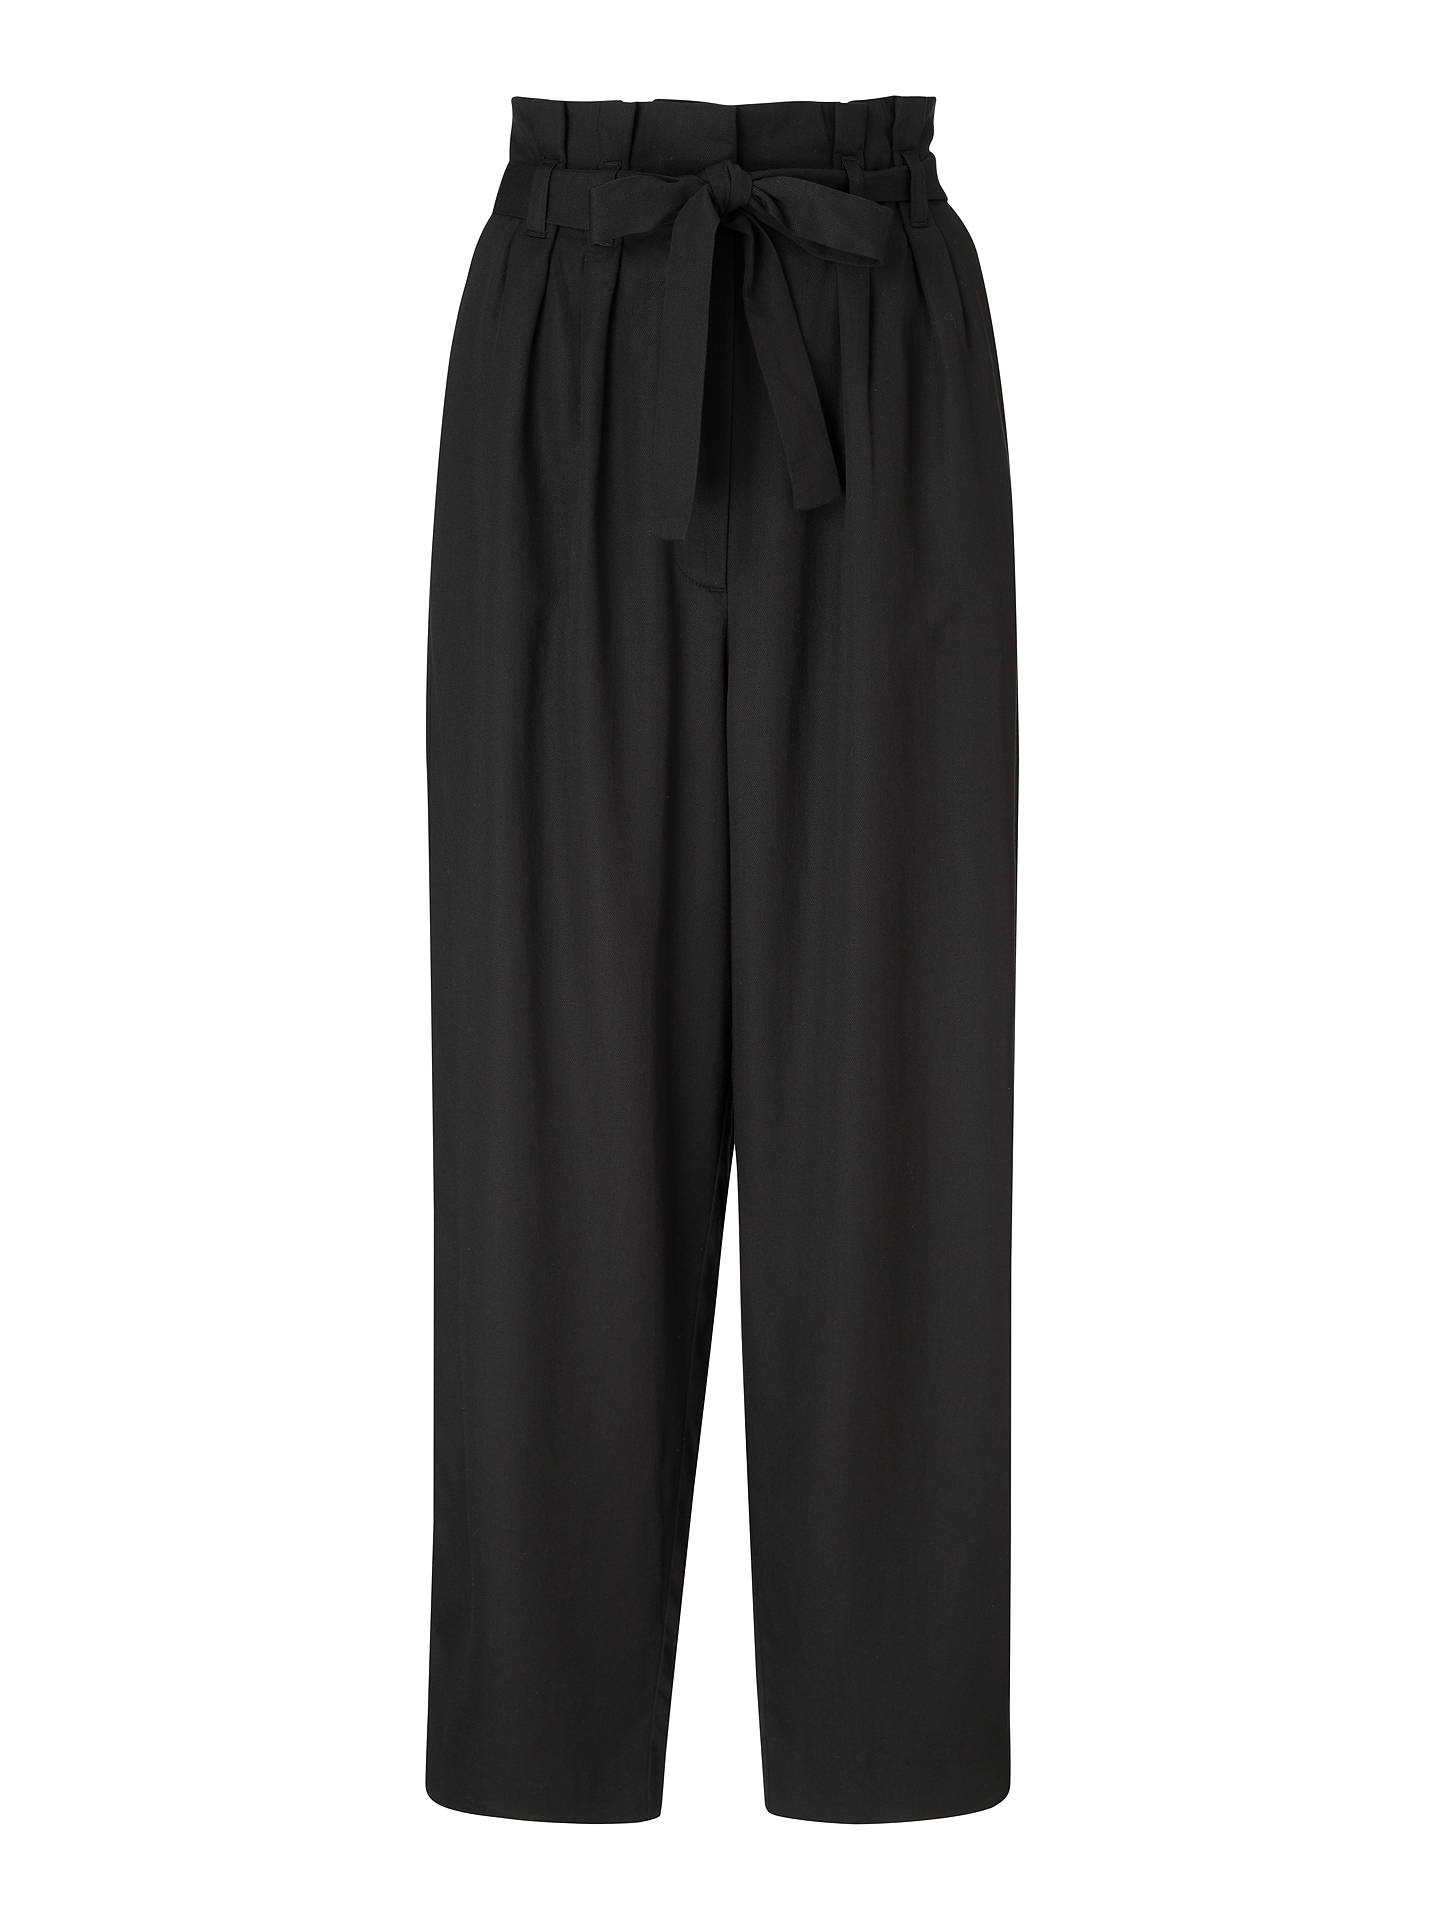 ARMEDANGELS Timeaa Tie Waist Trousers, Black at John Lewis & Partners